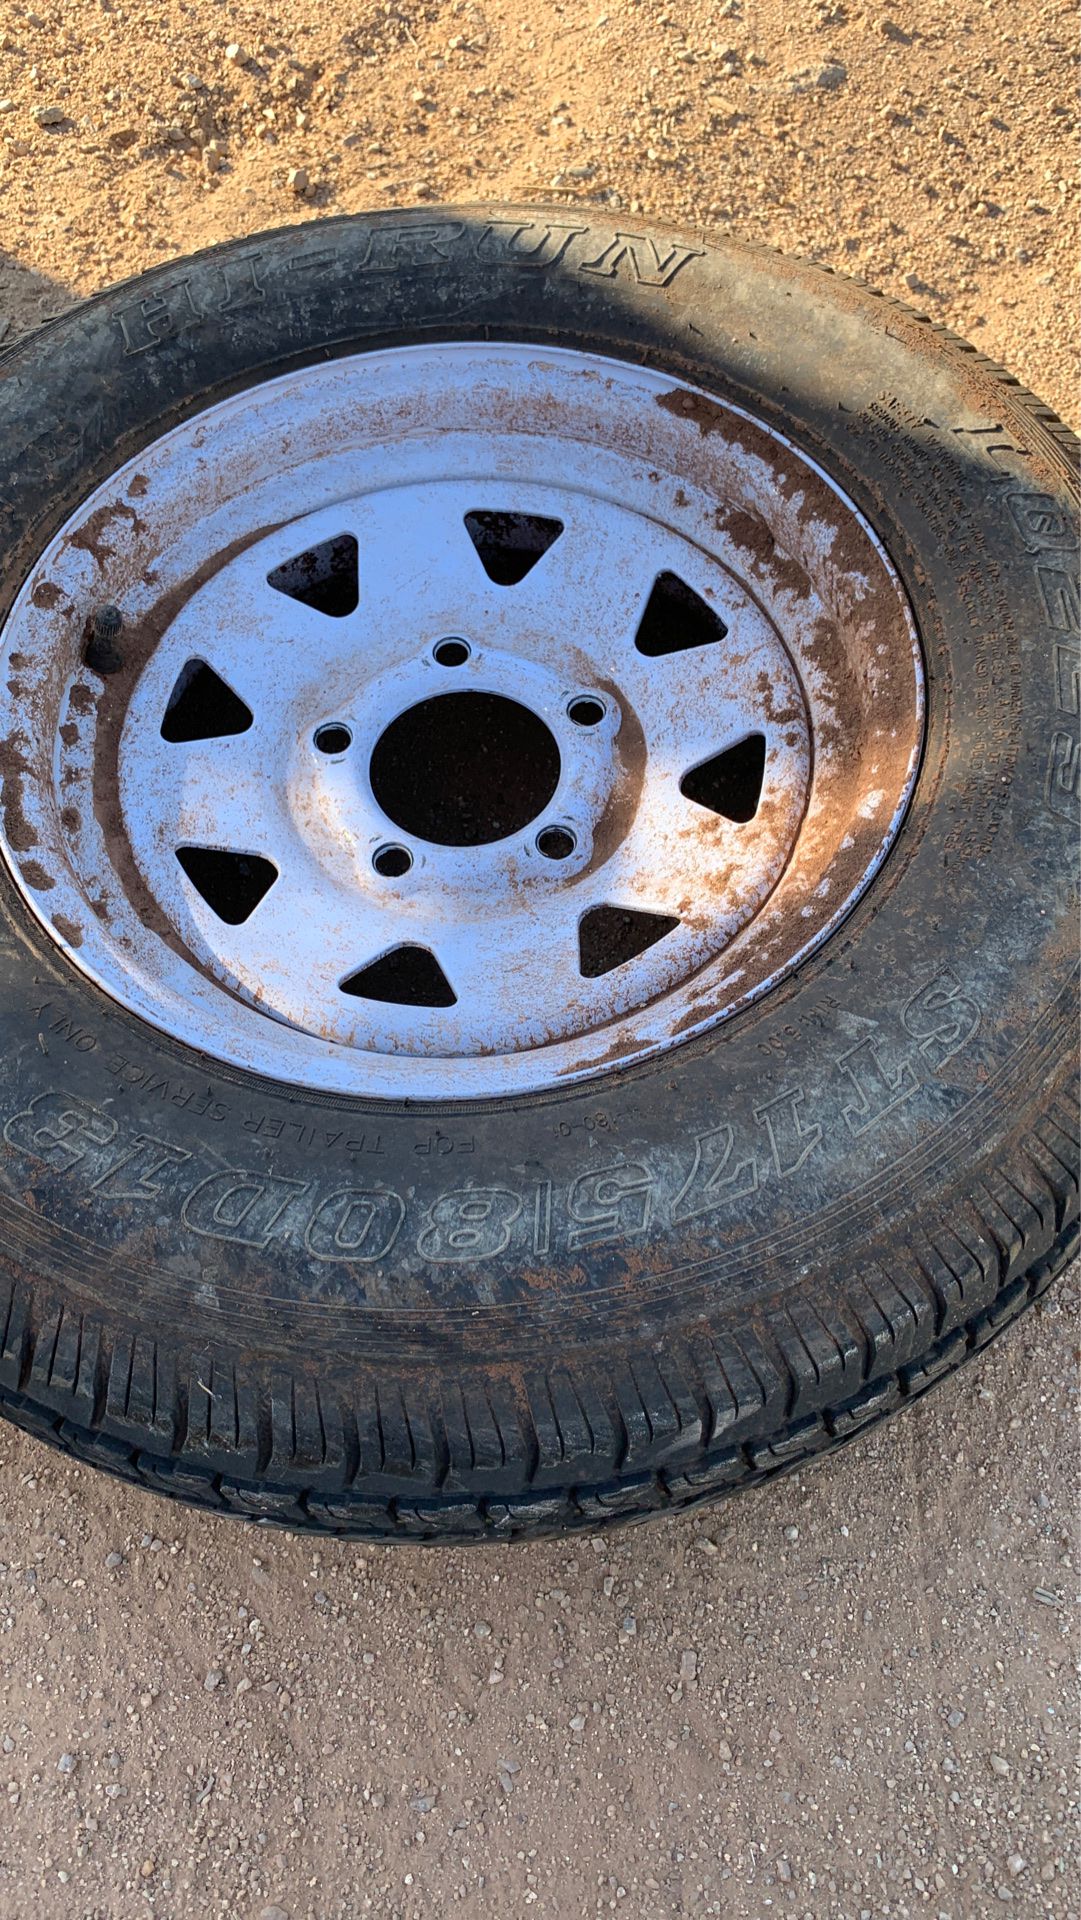 Spare trailer tire